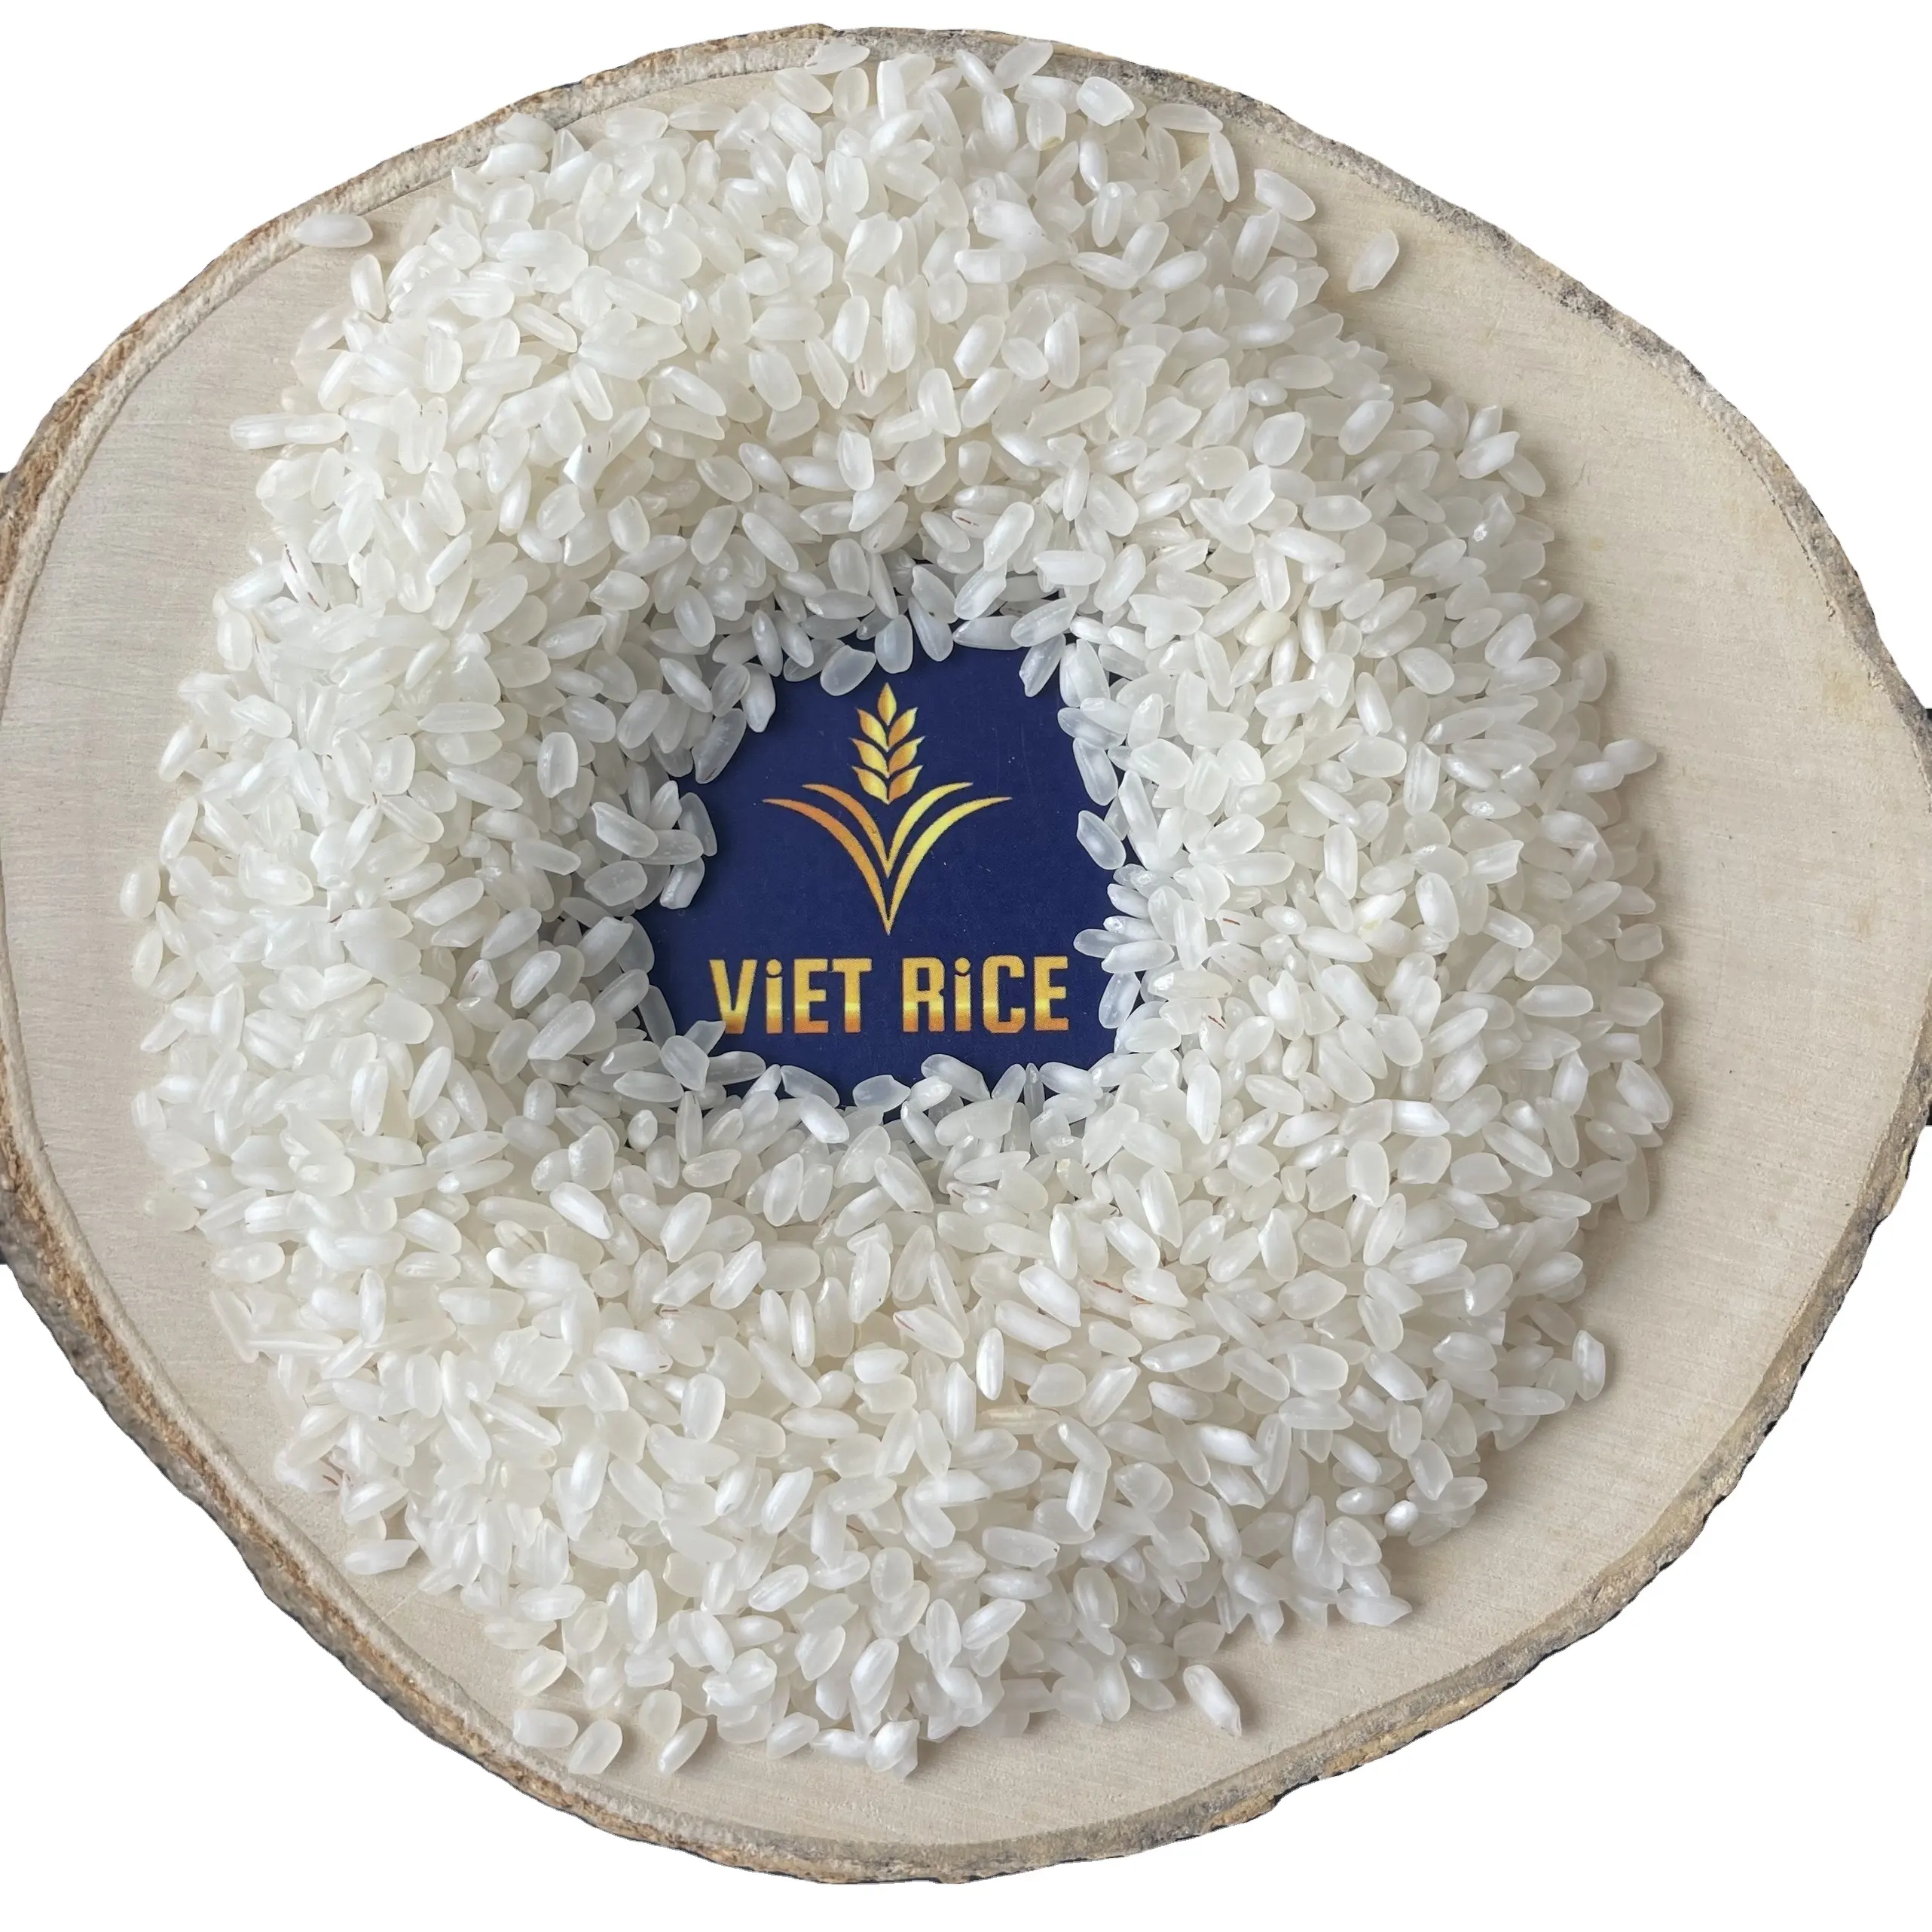 CALROSE RIZ поставляется в премиальном качестве, в большом количестве и по конкурентоспособной цене от VIETRICE-вьетнамского производителя и экспортера риса